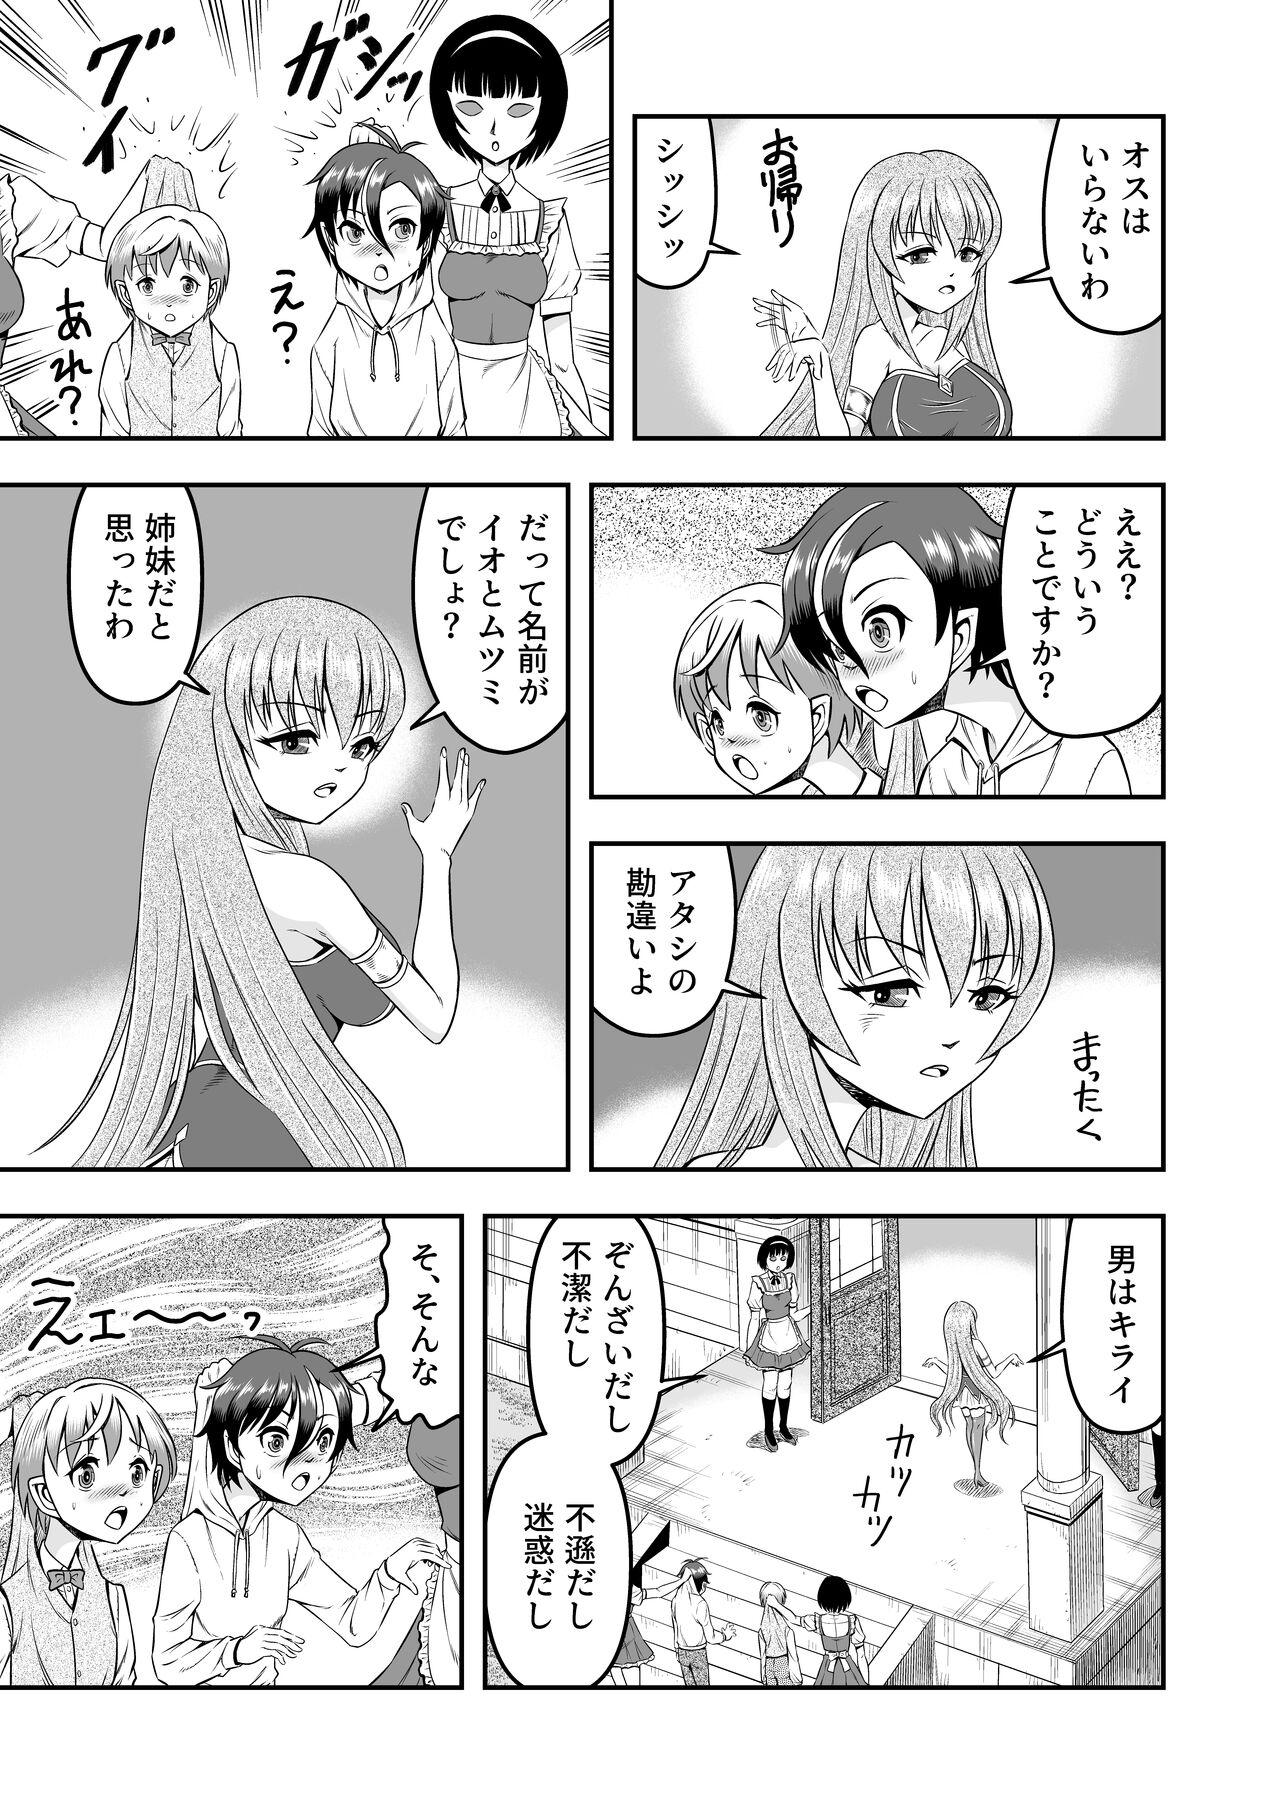 Twerking atashi, osu gakigirai da kara otoko no musume ni shite wakarasemasu !! maehen 3way - Page 11